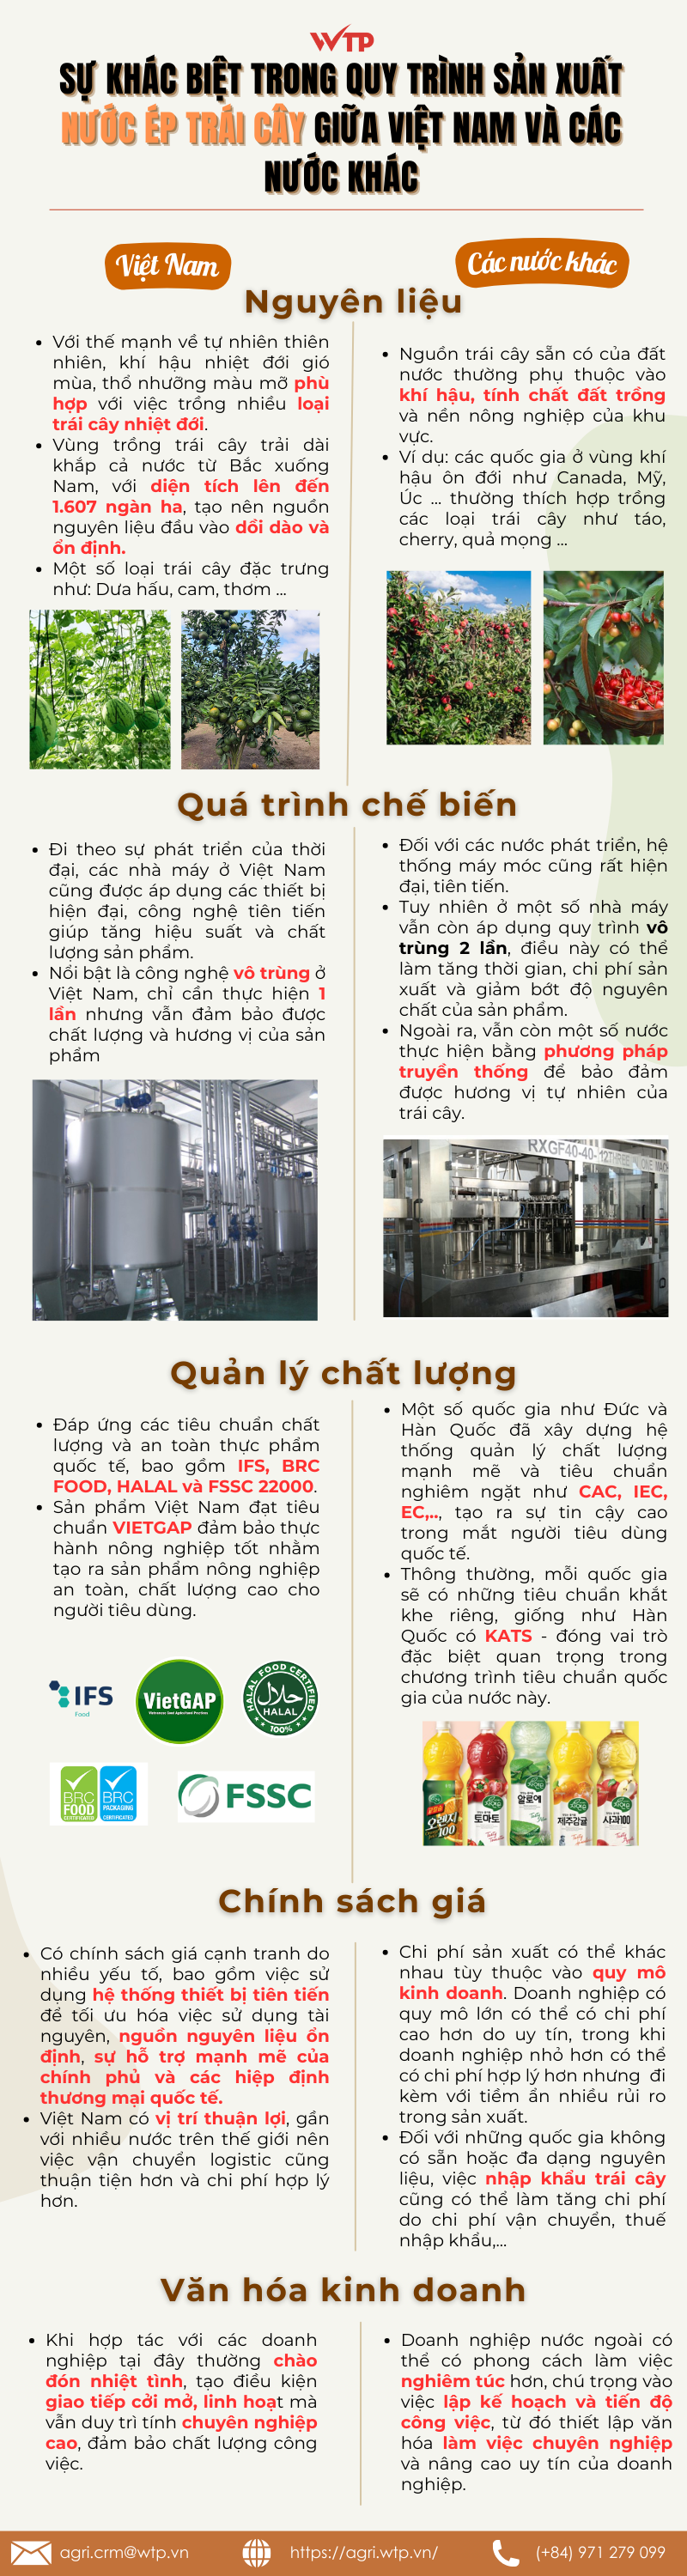 quy trình sản xuất nước ép trái cây giữa Việt Nam và các nước khác